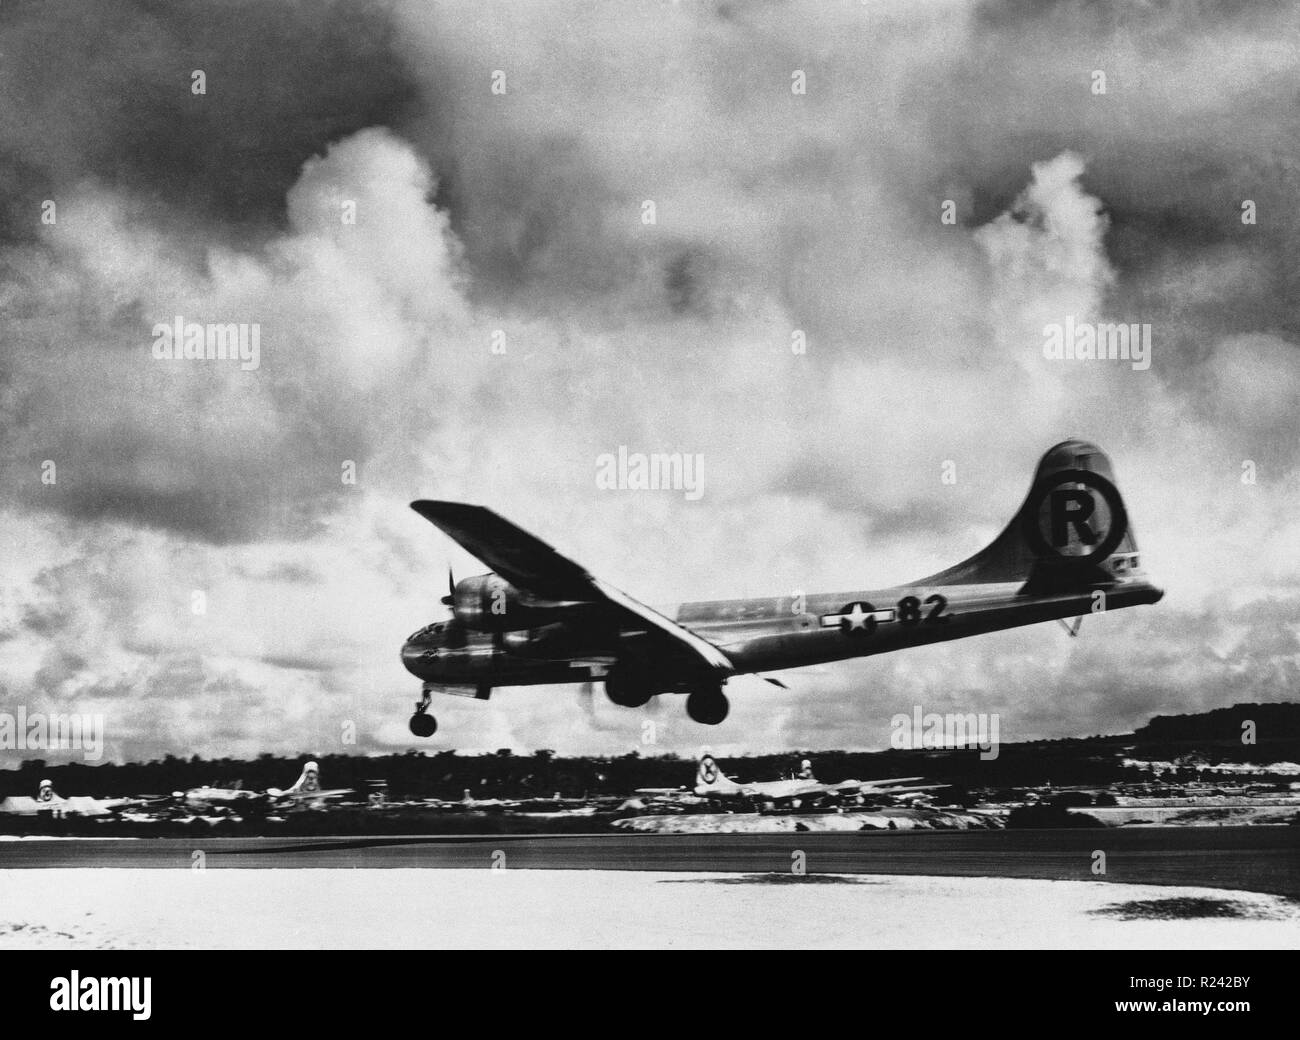 Die Enola Gay, Boeing B-29 Superfortress Bomber, genannt für die Enola Gay Tibbets, der Mutter des Piloten, Colonel Paul Tibbets, Am 6. August 1945, in der Endphase des Zweiten Weltkriegs, wurde es das erste Flugzeug, das eine Atombombe zu fallen. Die Bombe, wurde in der Stadt Hiroshima, Japan, Stockfoto